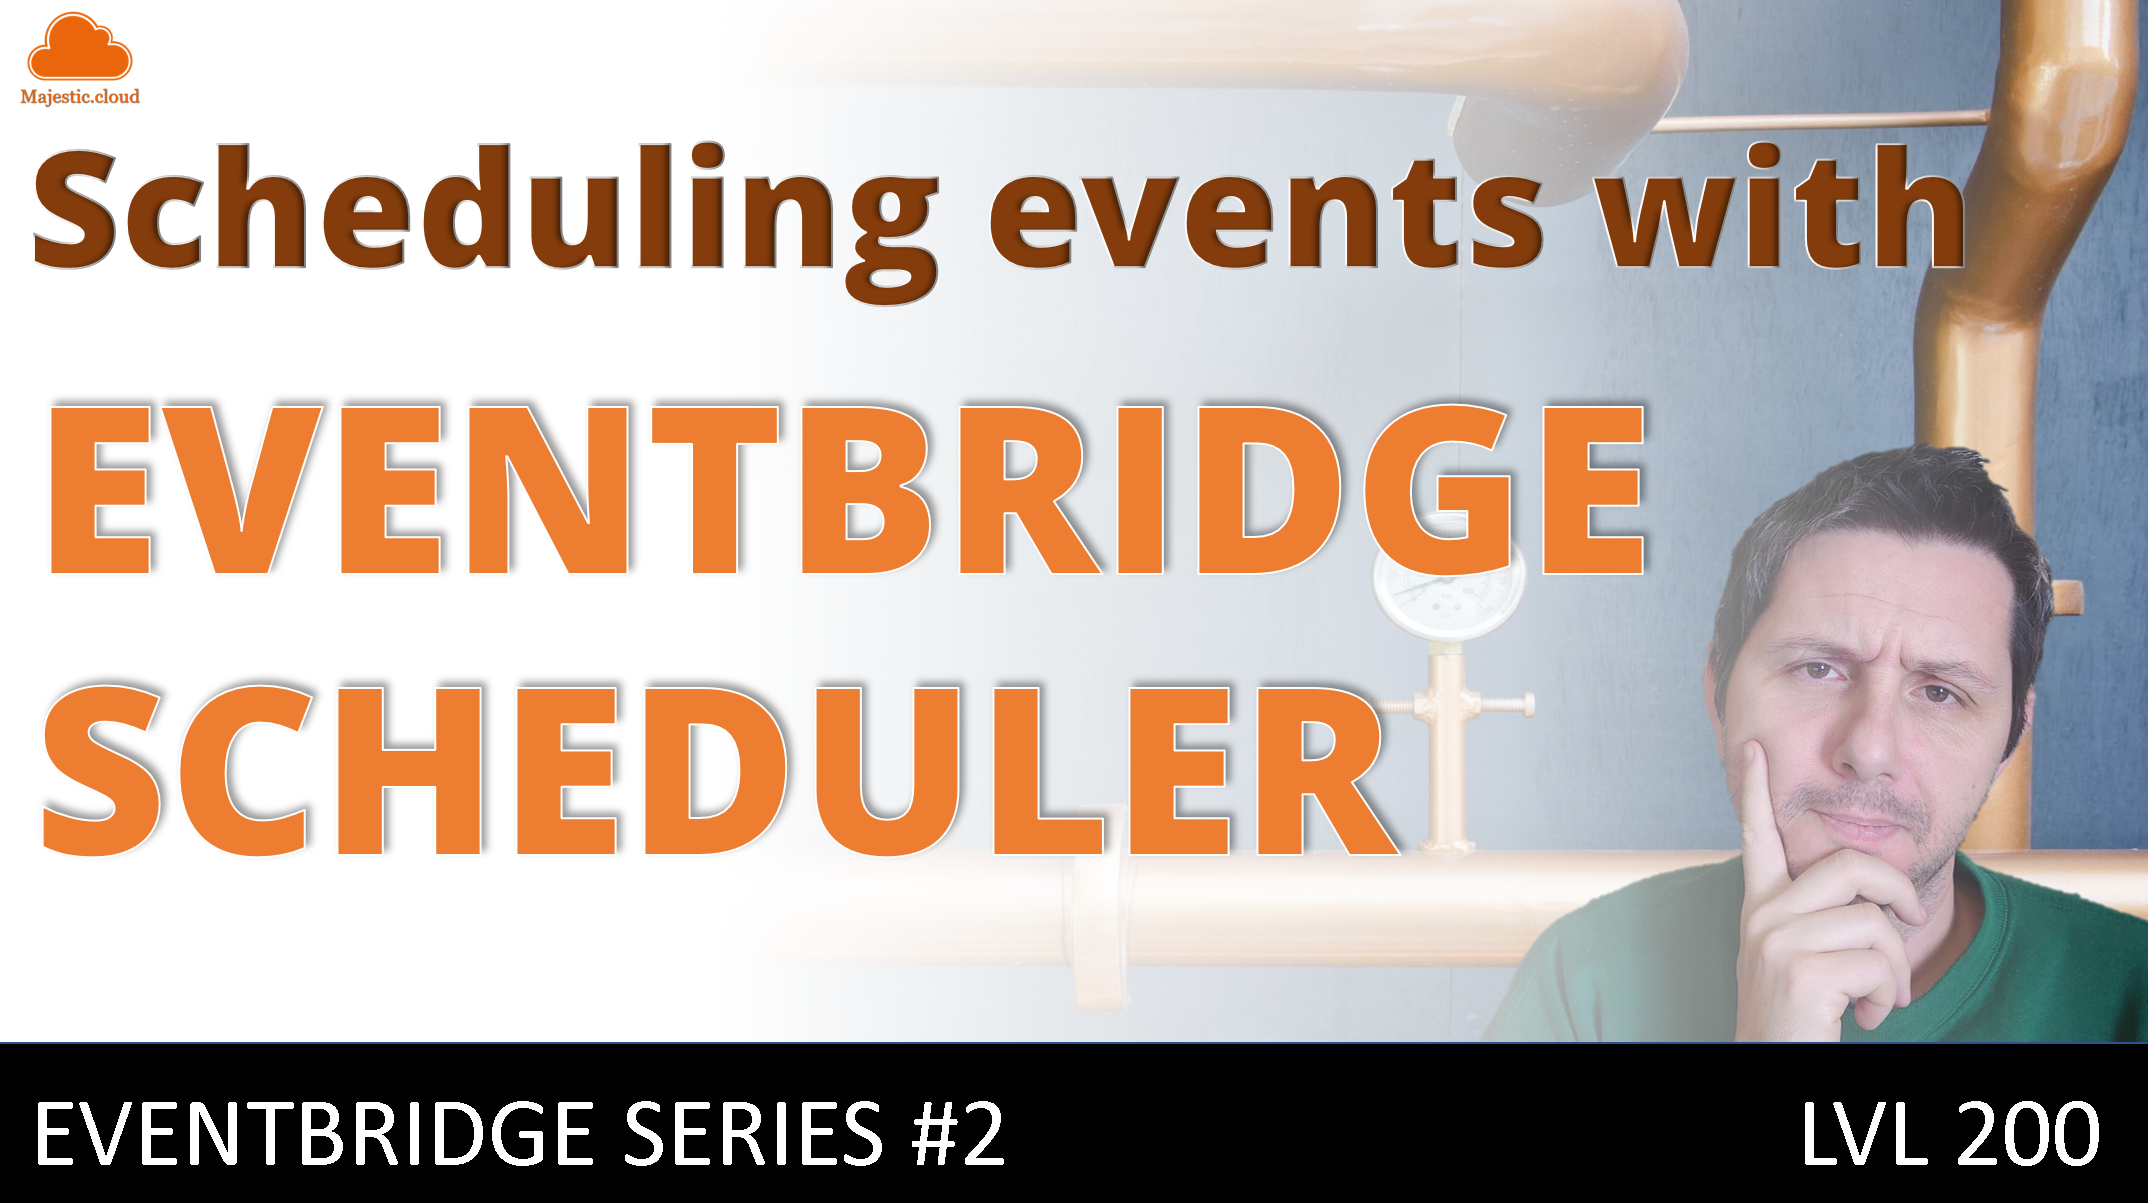 EventBridge Scheduler - how to run scheduled tasks at scale!